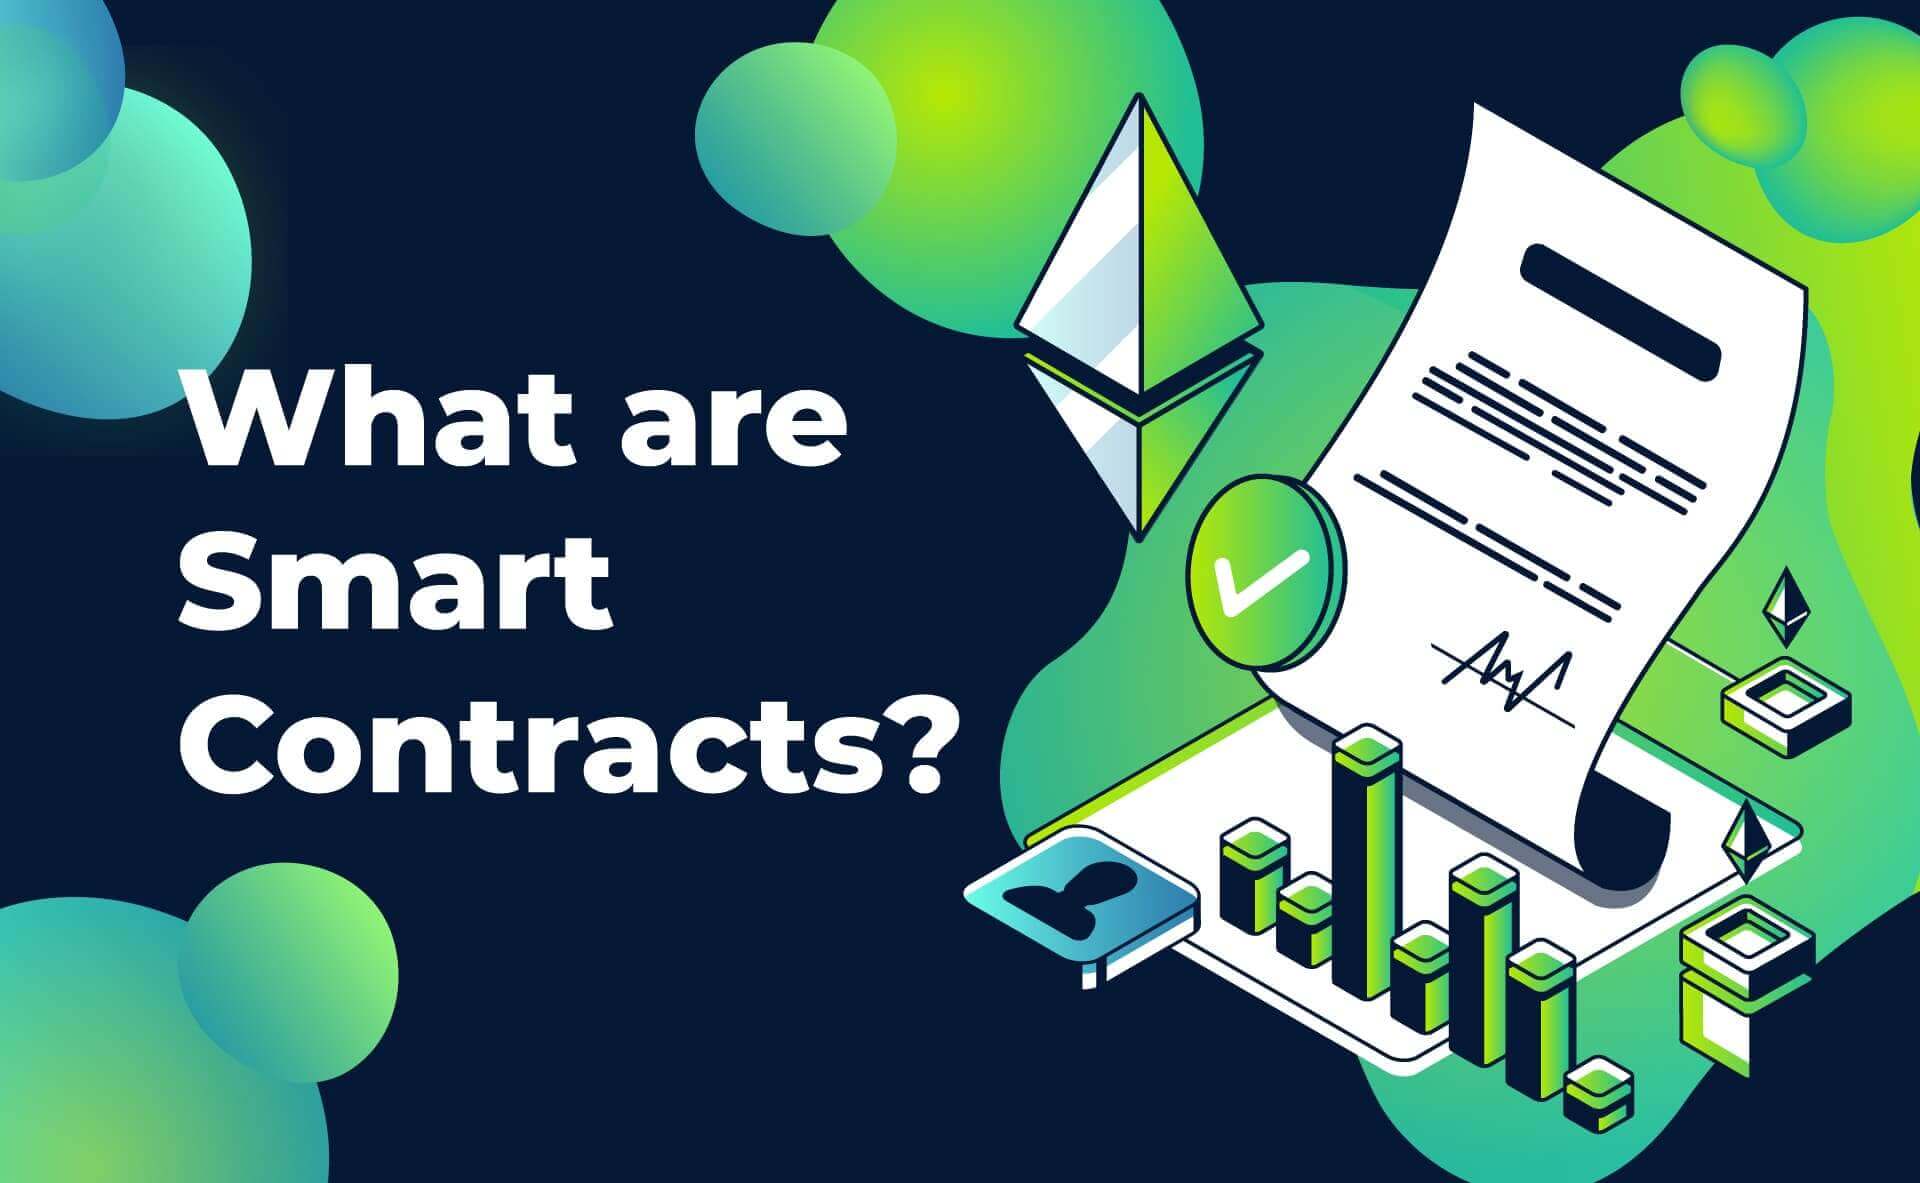 قرارداد هوشمند یا اسمارت کانترکت (Smart Contract) در بلاکچین چیست؟